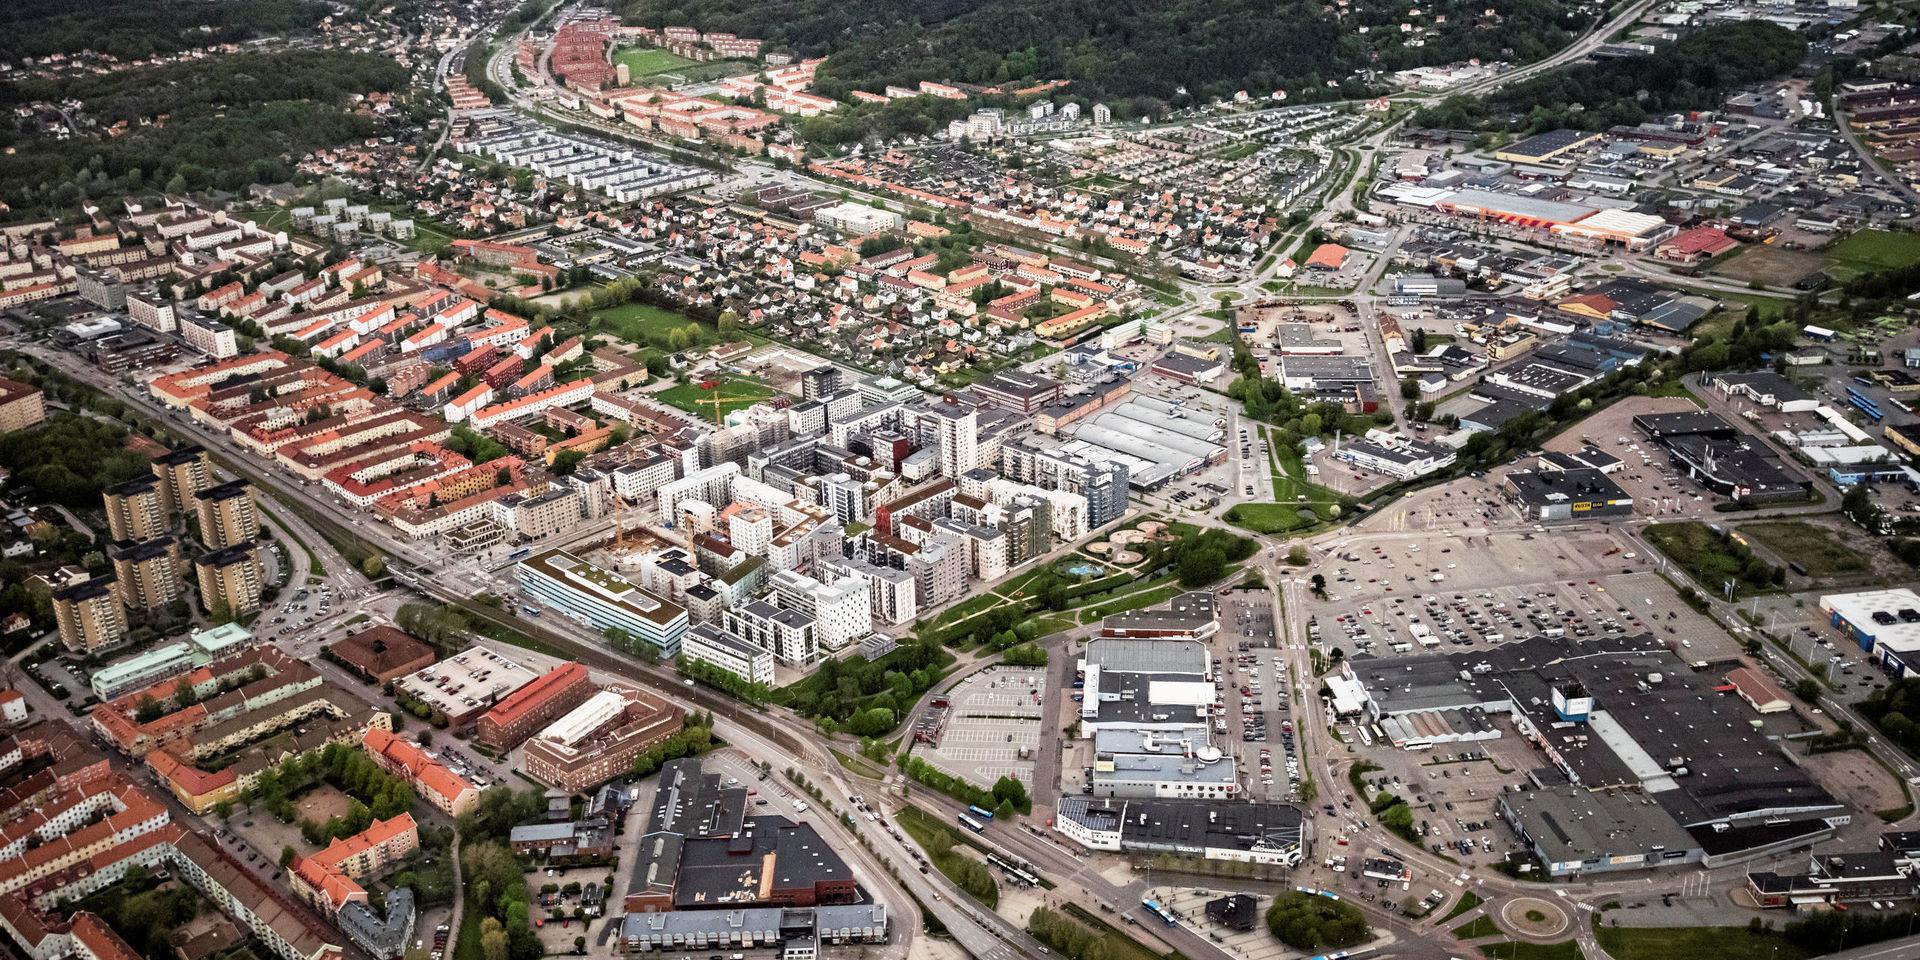 Backaplan kommer att bli en av Göteborgs tätaste stadsdelar. Boendetätheten beräknas till cirka 190 invånare per hektar vilket kan jämföras med dagens tätaste stadsdelar; Majorna  och Kungsladugård på cirka 150 invånare per hektar, skriver debattörerna.